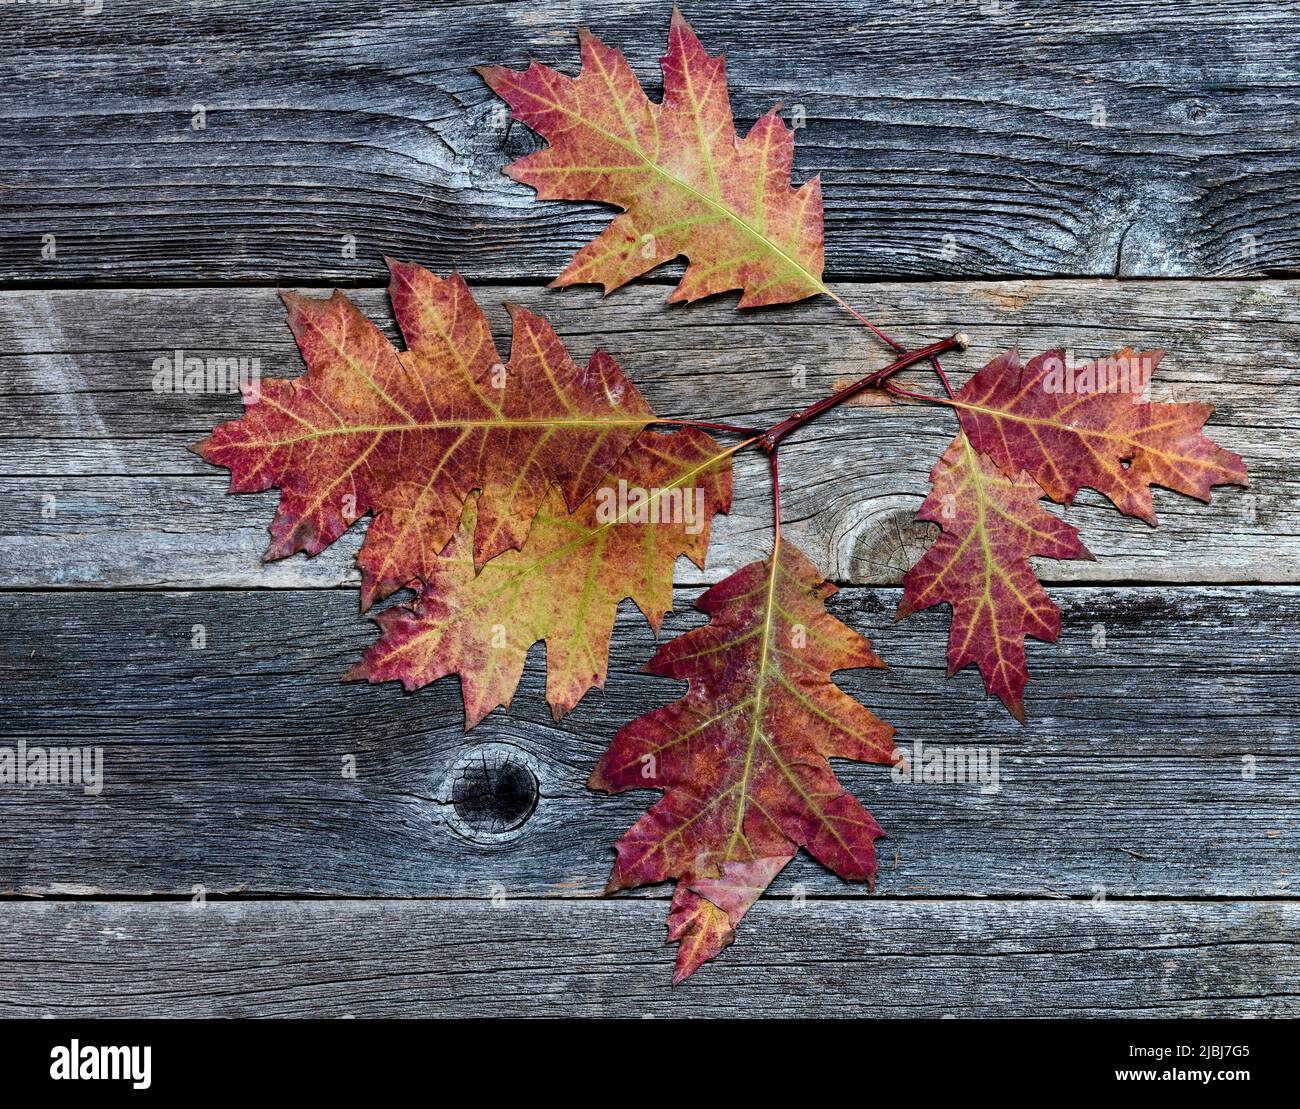 Hojas de roble descolorido sobre fondo de madera rústica para el concepto de otoño Foto de stock